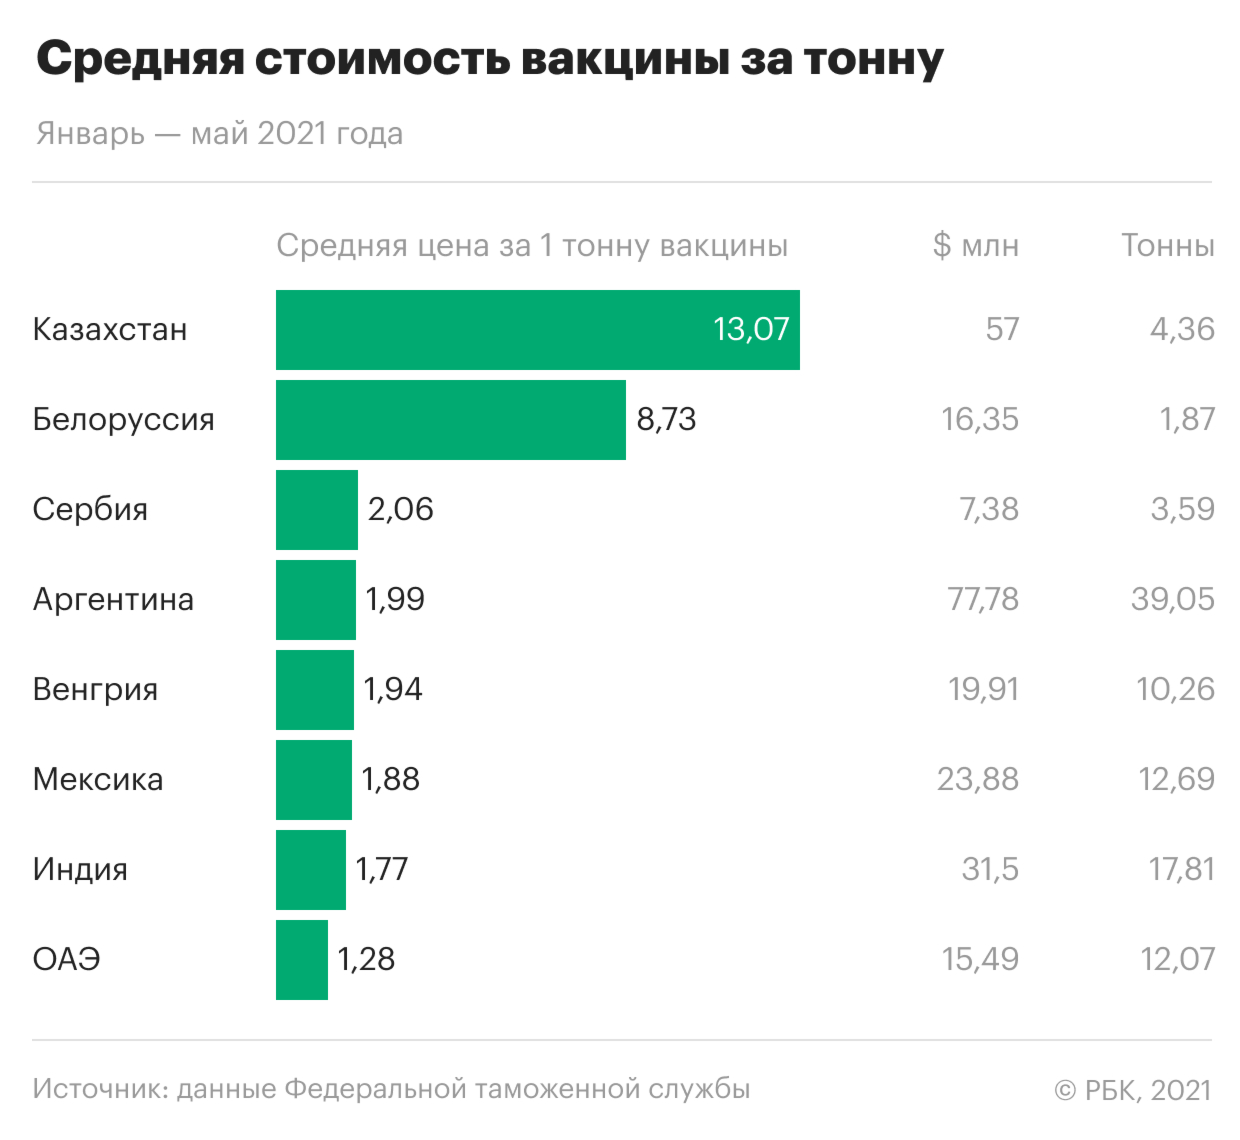 Таможня зафиксировала резкий рост экспорта вакцин из России